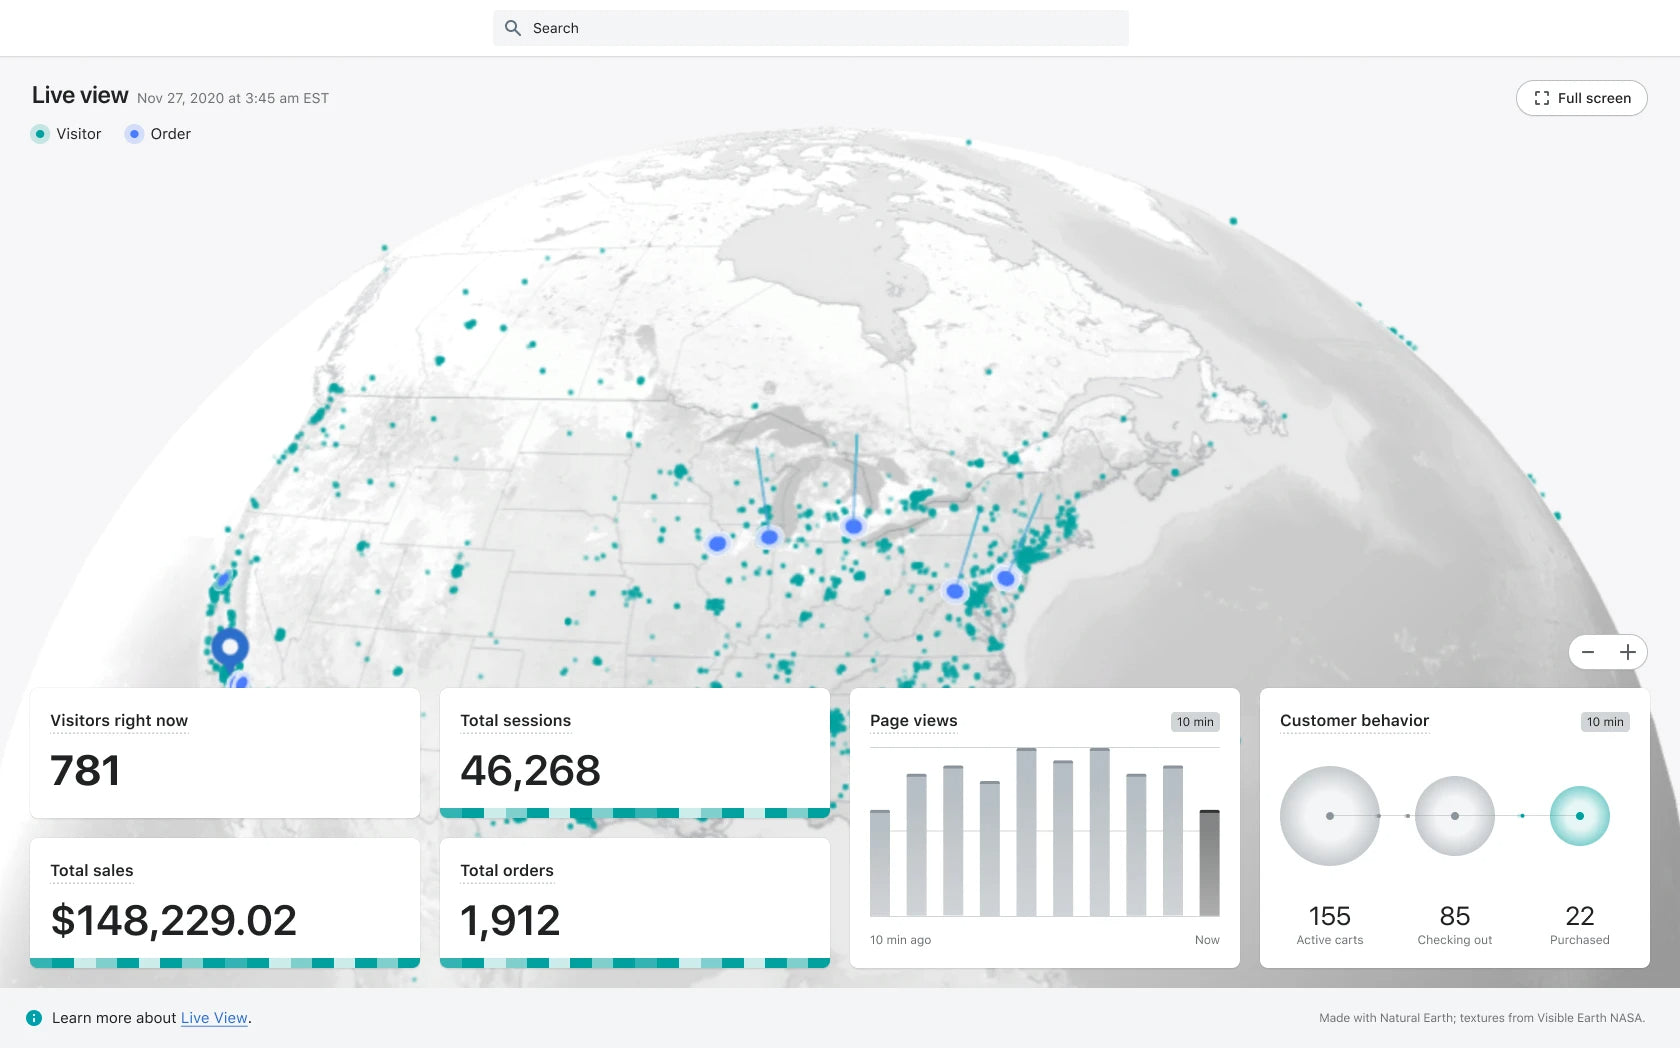 Statistiche e dati in tempo reale su Live View di Shopify